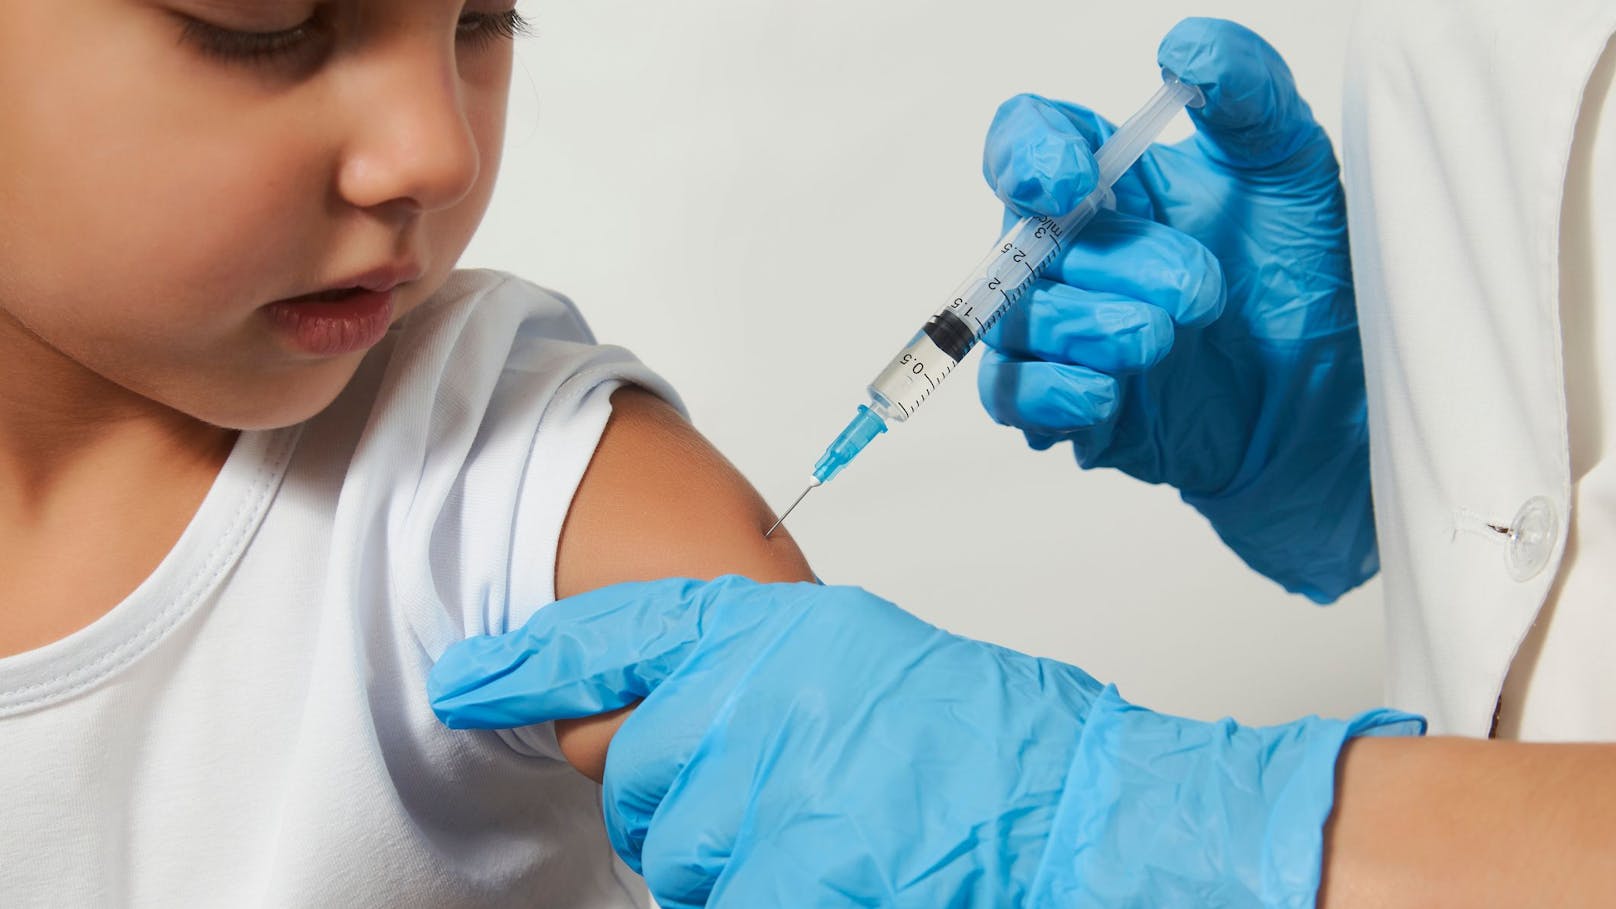 "Impfung sehr wichtig" – jetzt sind Kinder in Gefahr